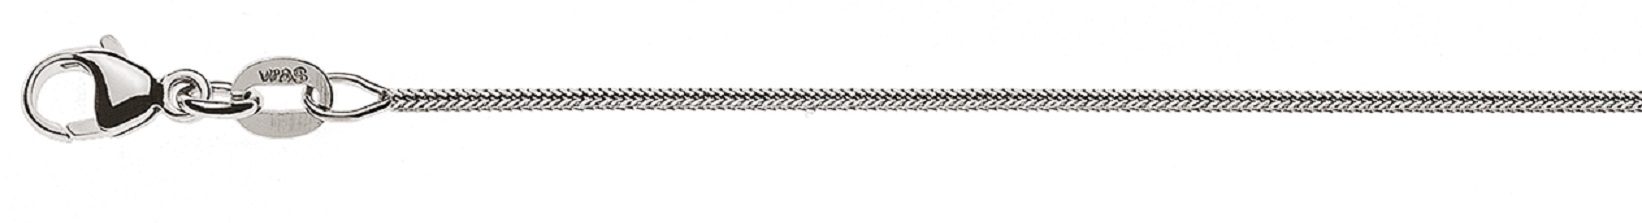 AURONOS Prestige Halskette Weissgold 18K Fuchsschwanz diamantiert 38cm 0.9mm